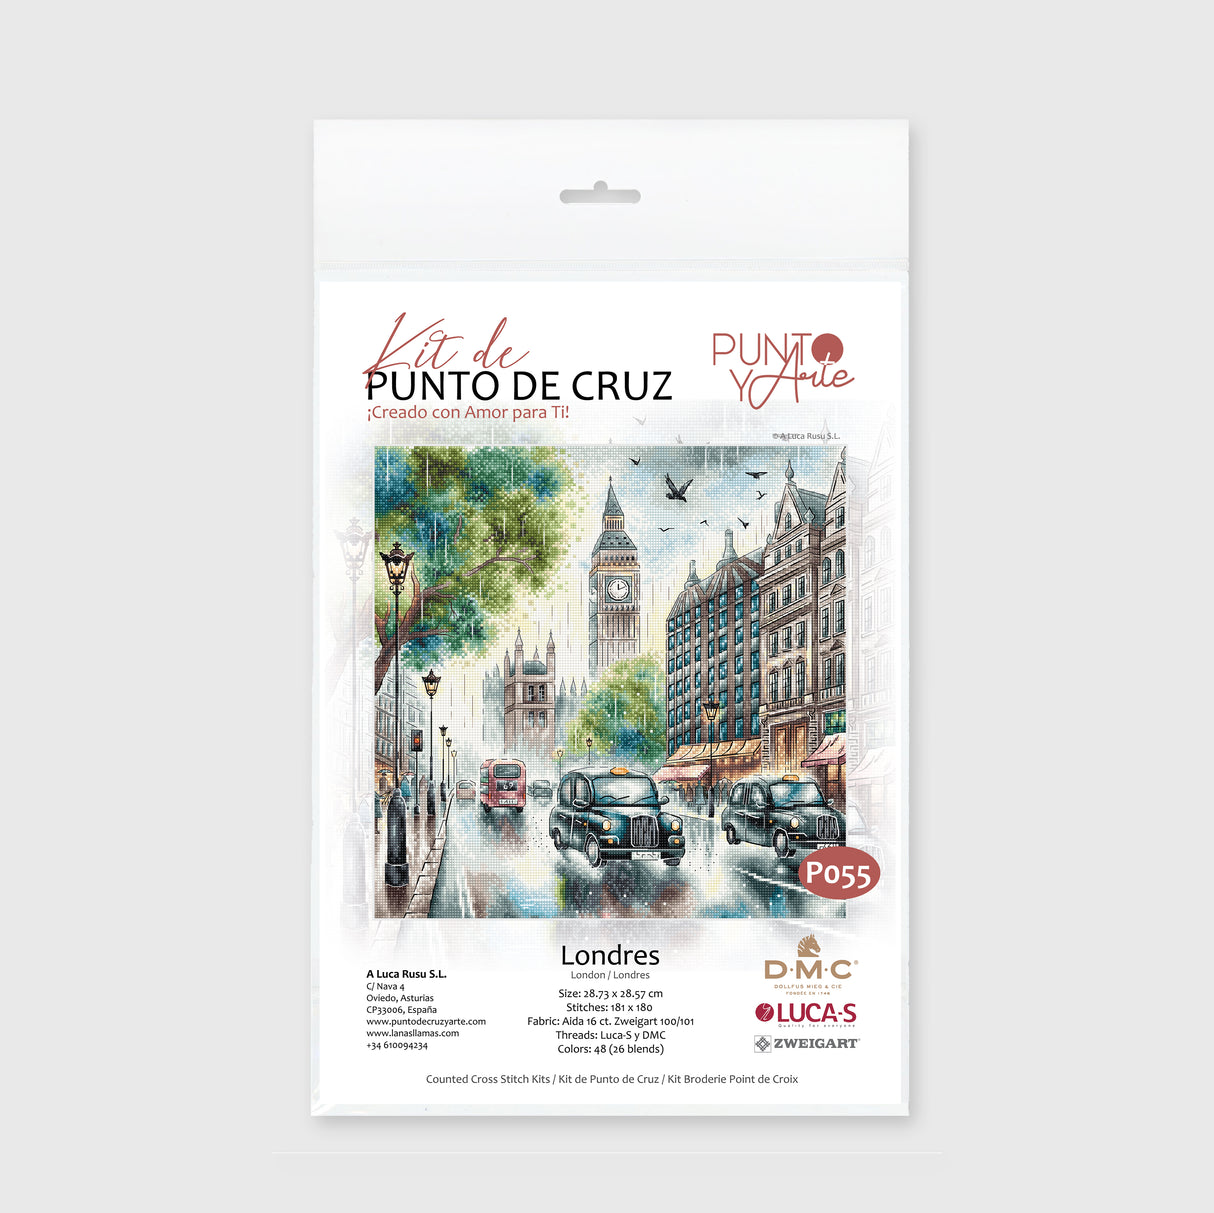 Kit de Punto de Cruz "Londres" de Punto y Arte - P055